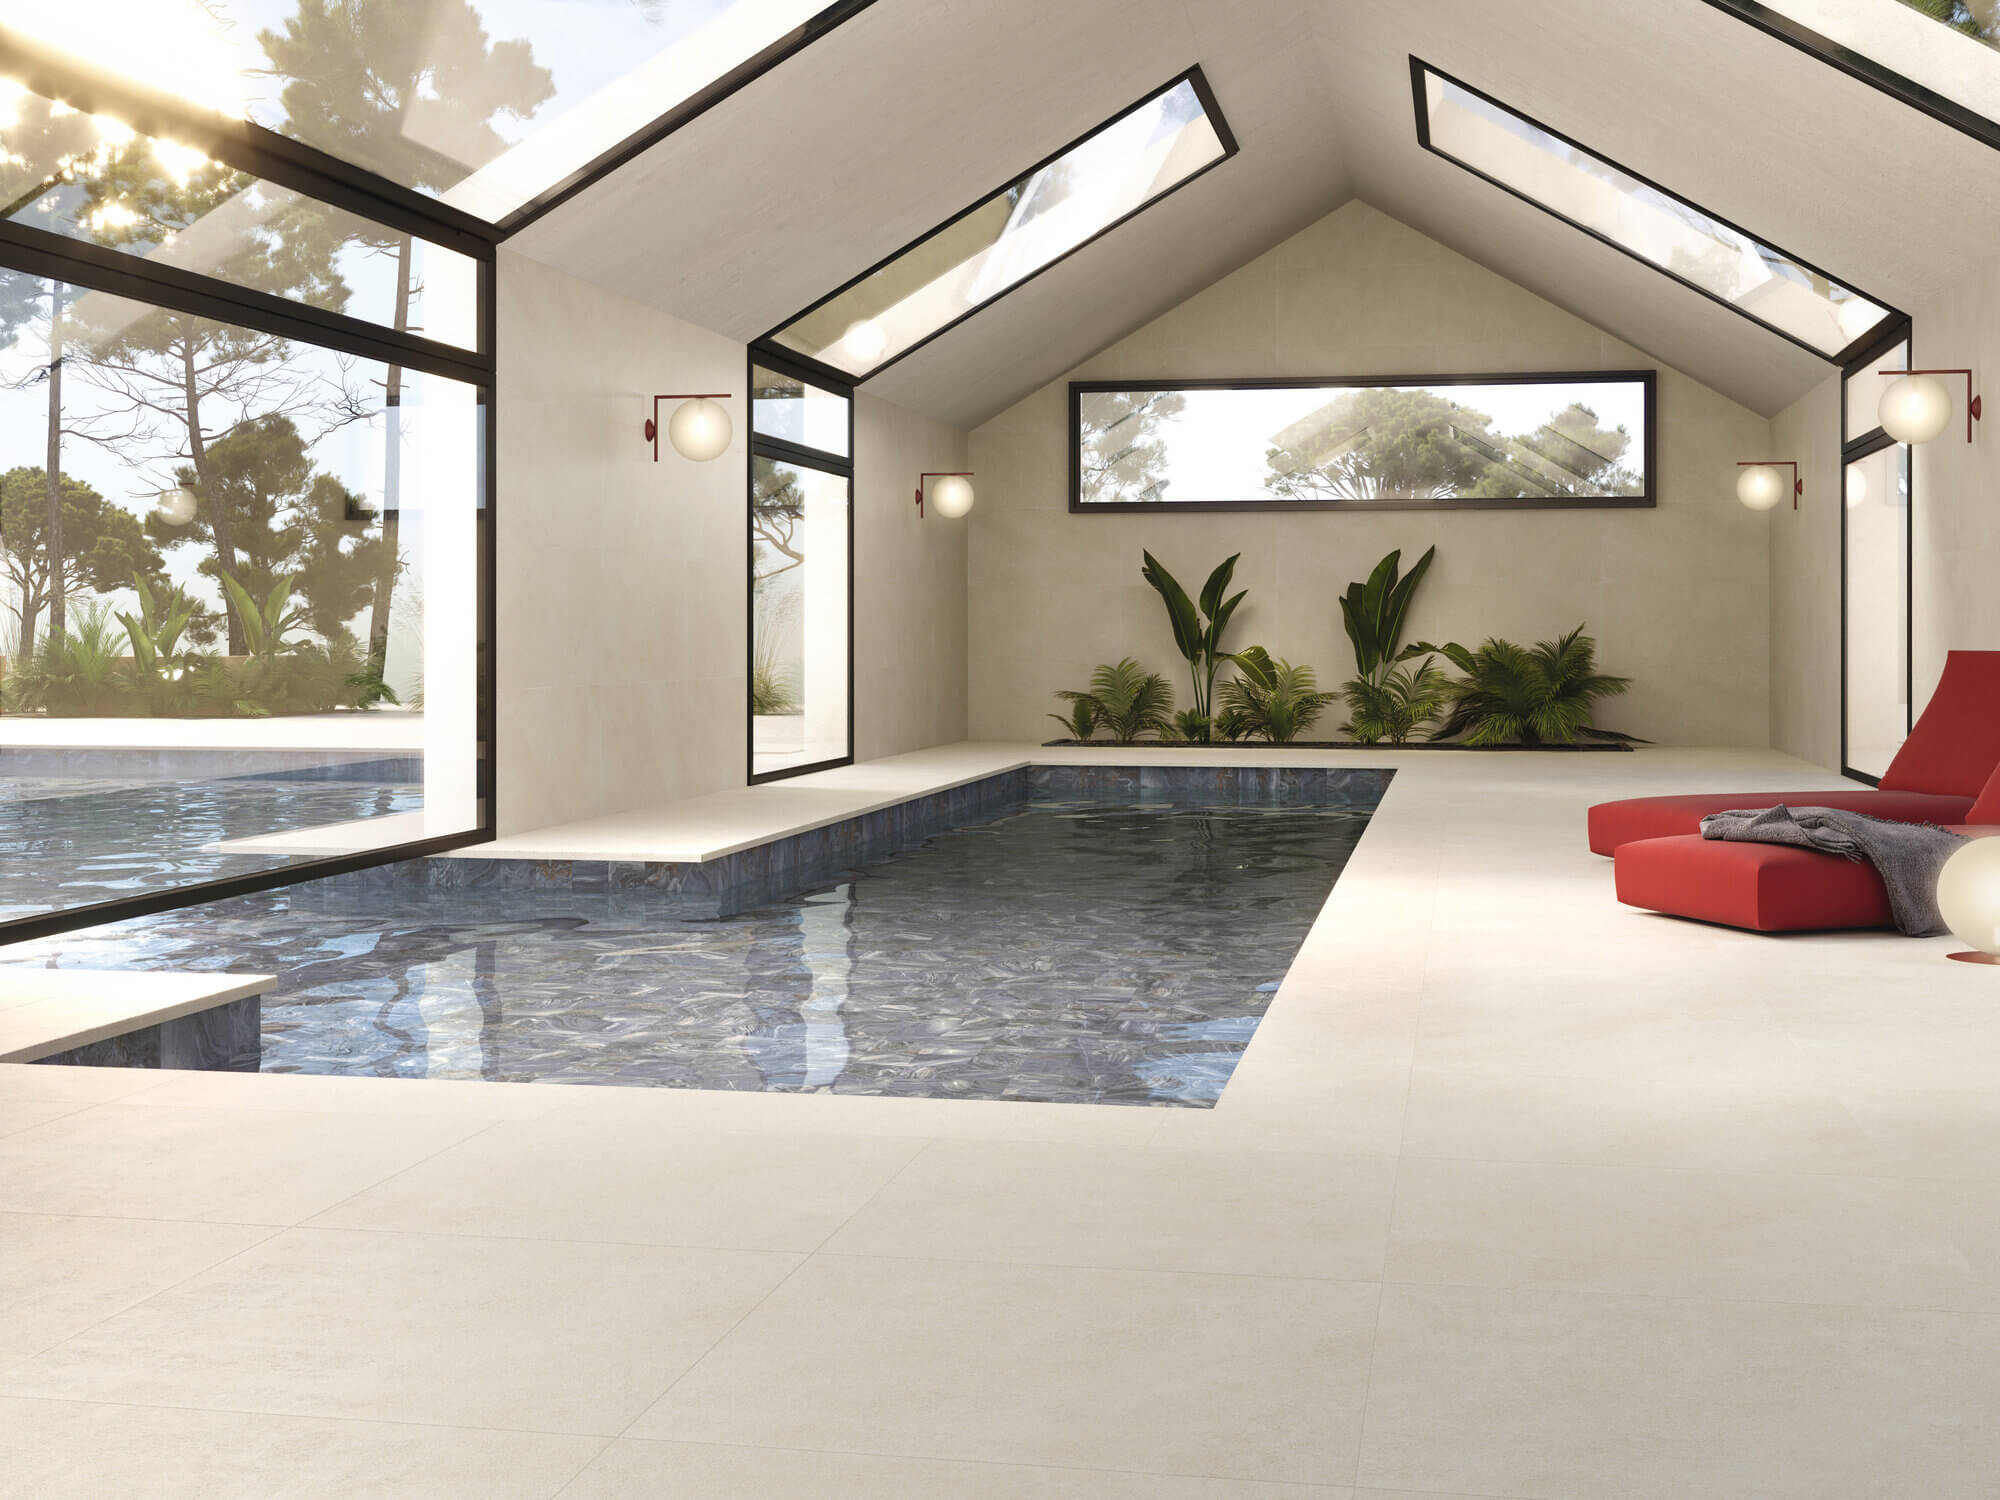 Azulejera Cerámica Cordobesa S.L. porcelánicos para piscinas modernas interiores